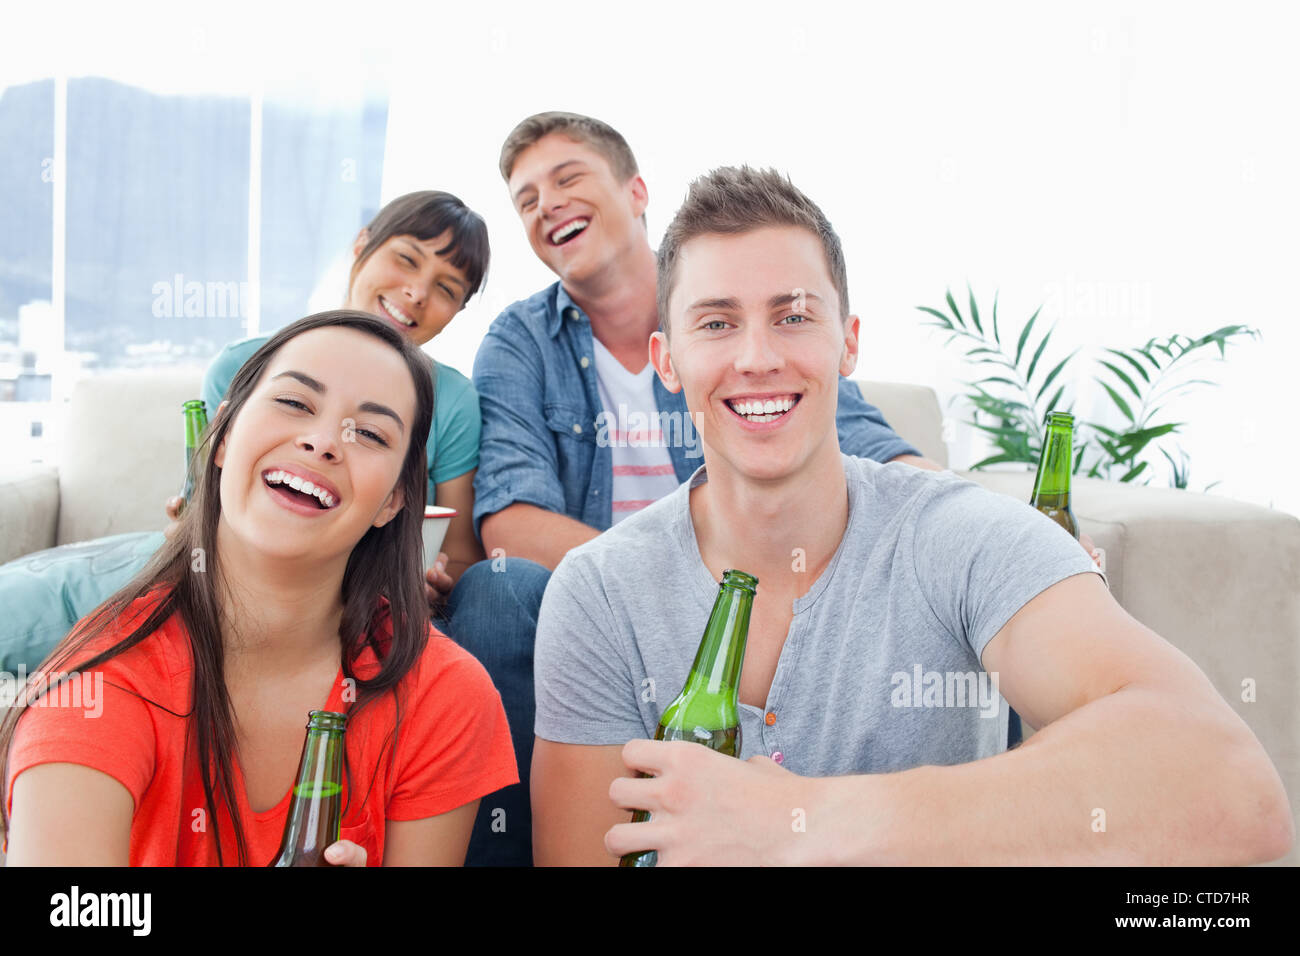 Quatre personnes dans un salon bénéficiant de la bière et de s'amuser ensemble Banque D'Images